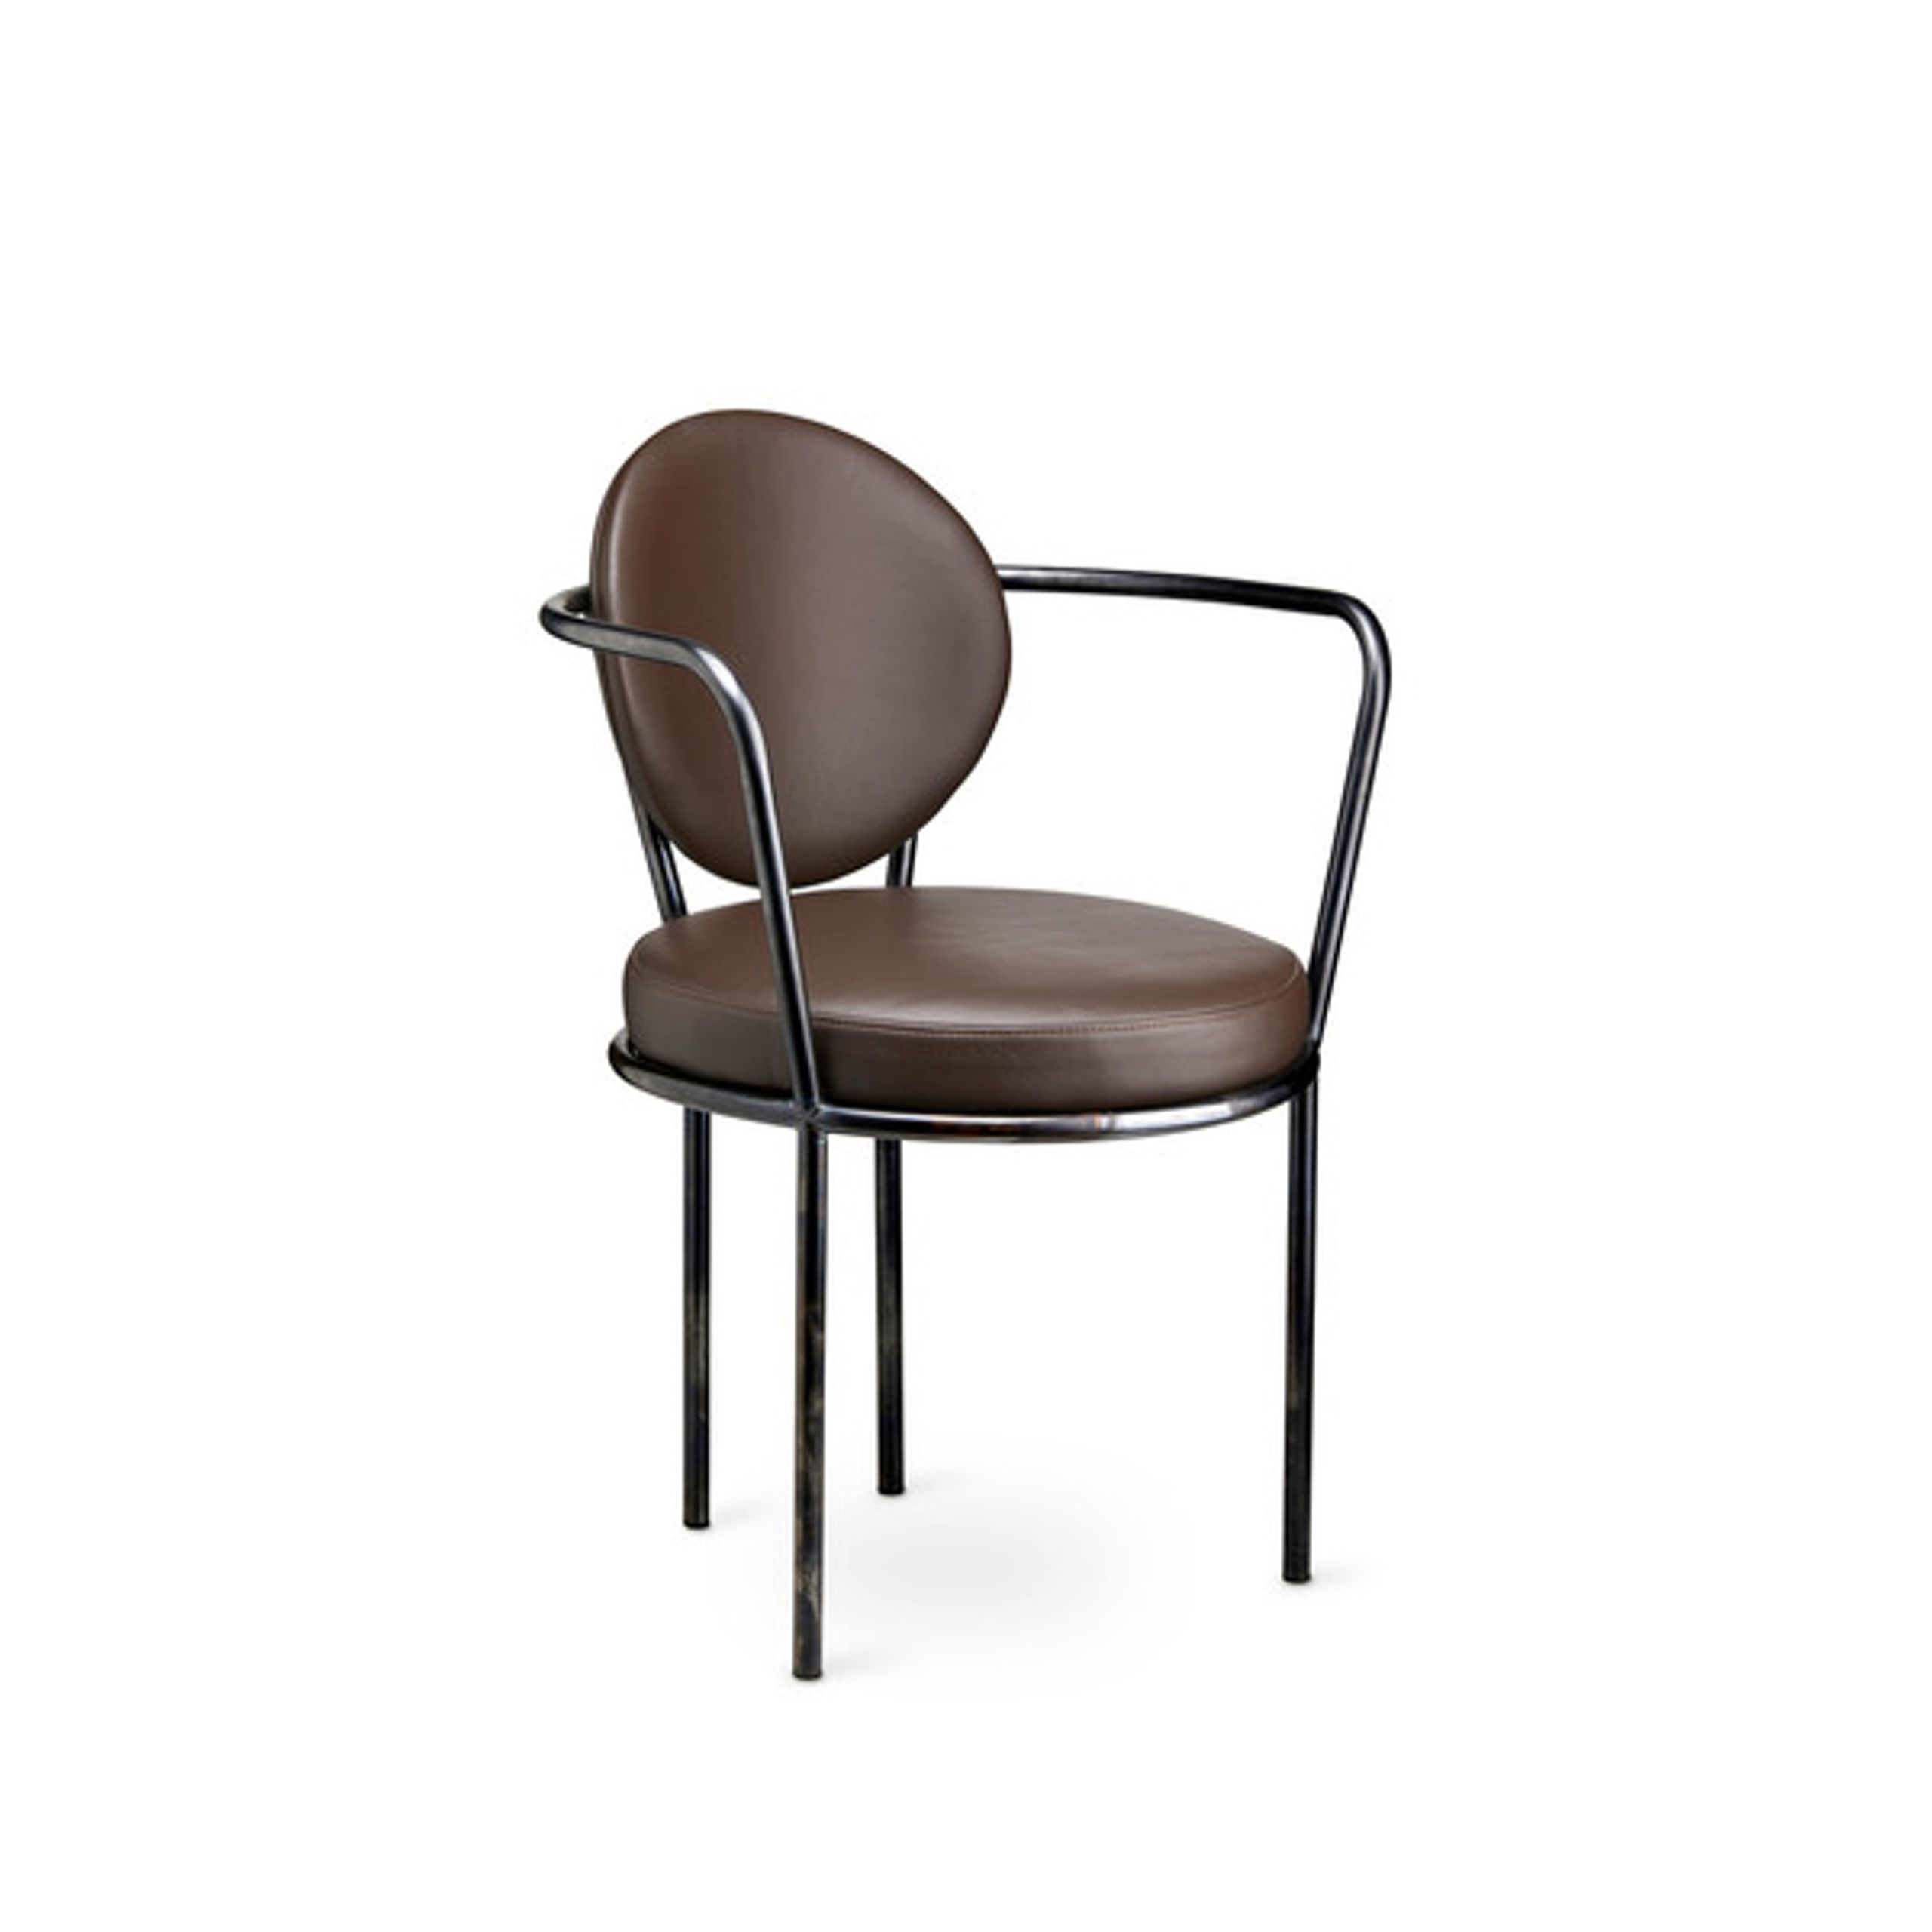 Design By Us - Esstischstuhl - Casablanca chair - Black Frame - Leather Sørensen Ultra - Brown